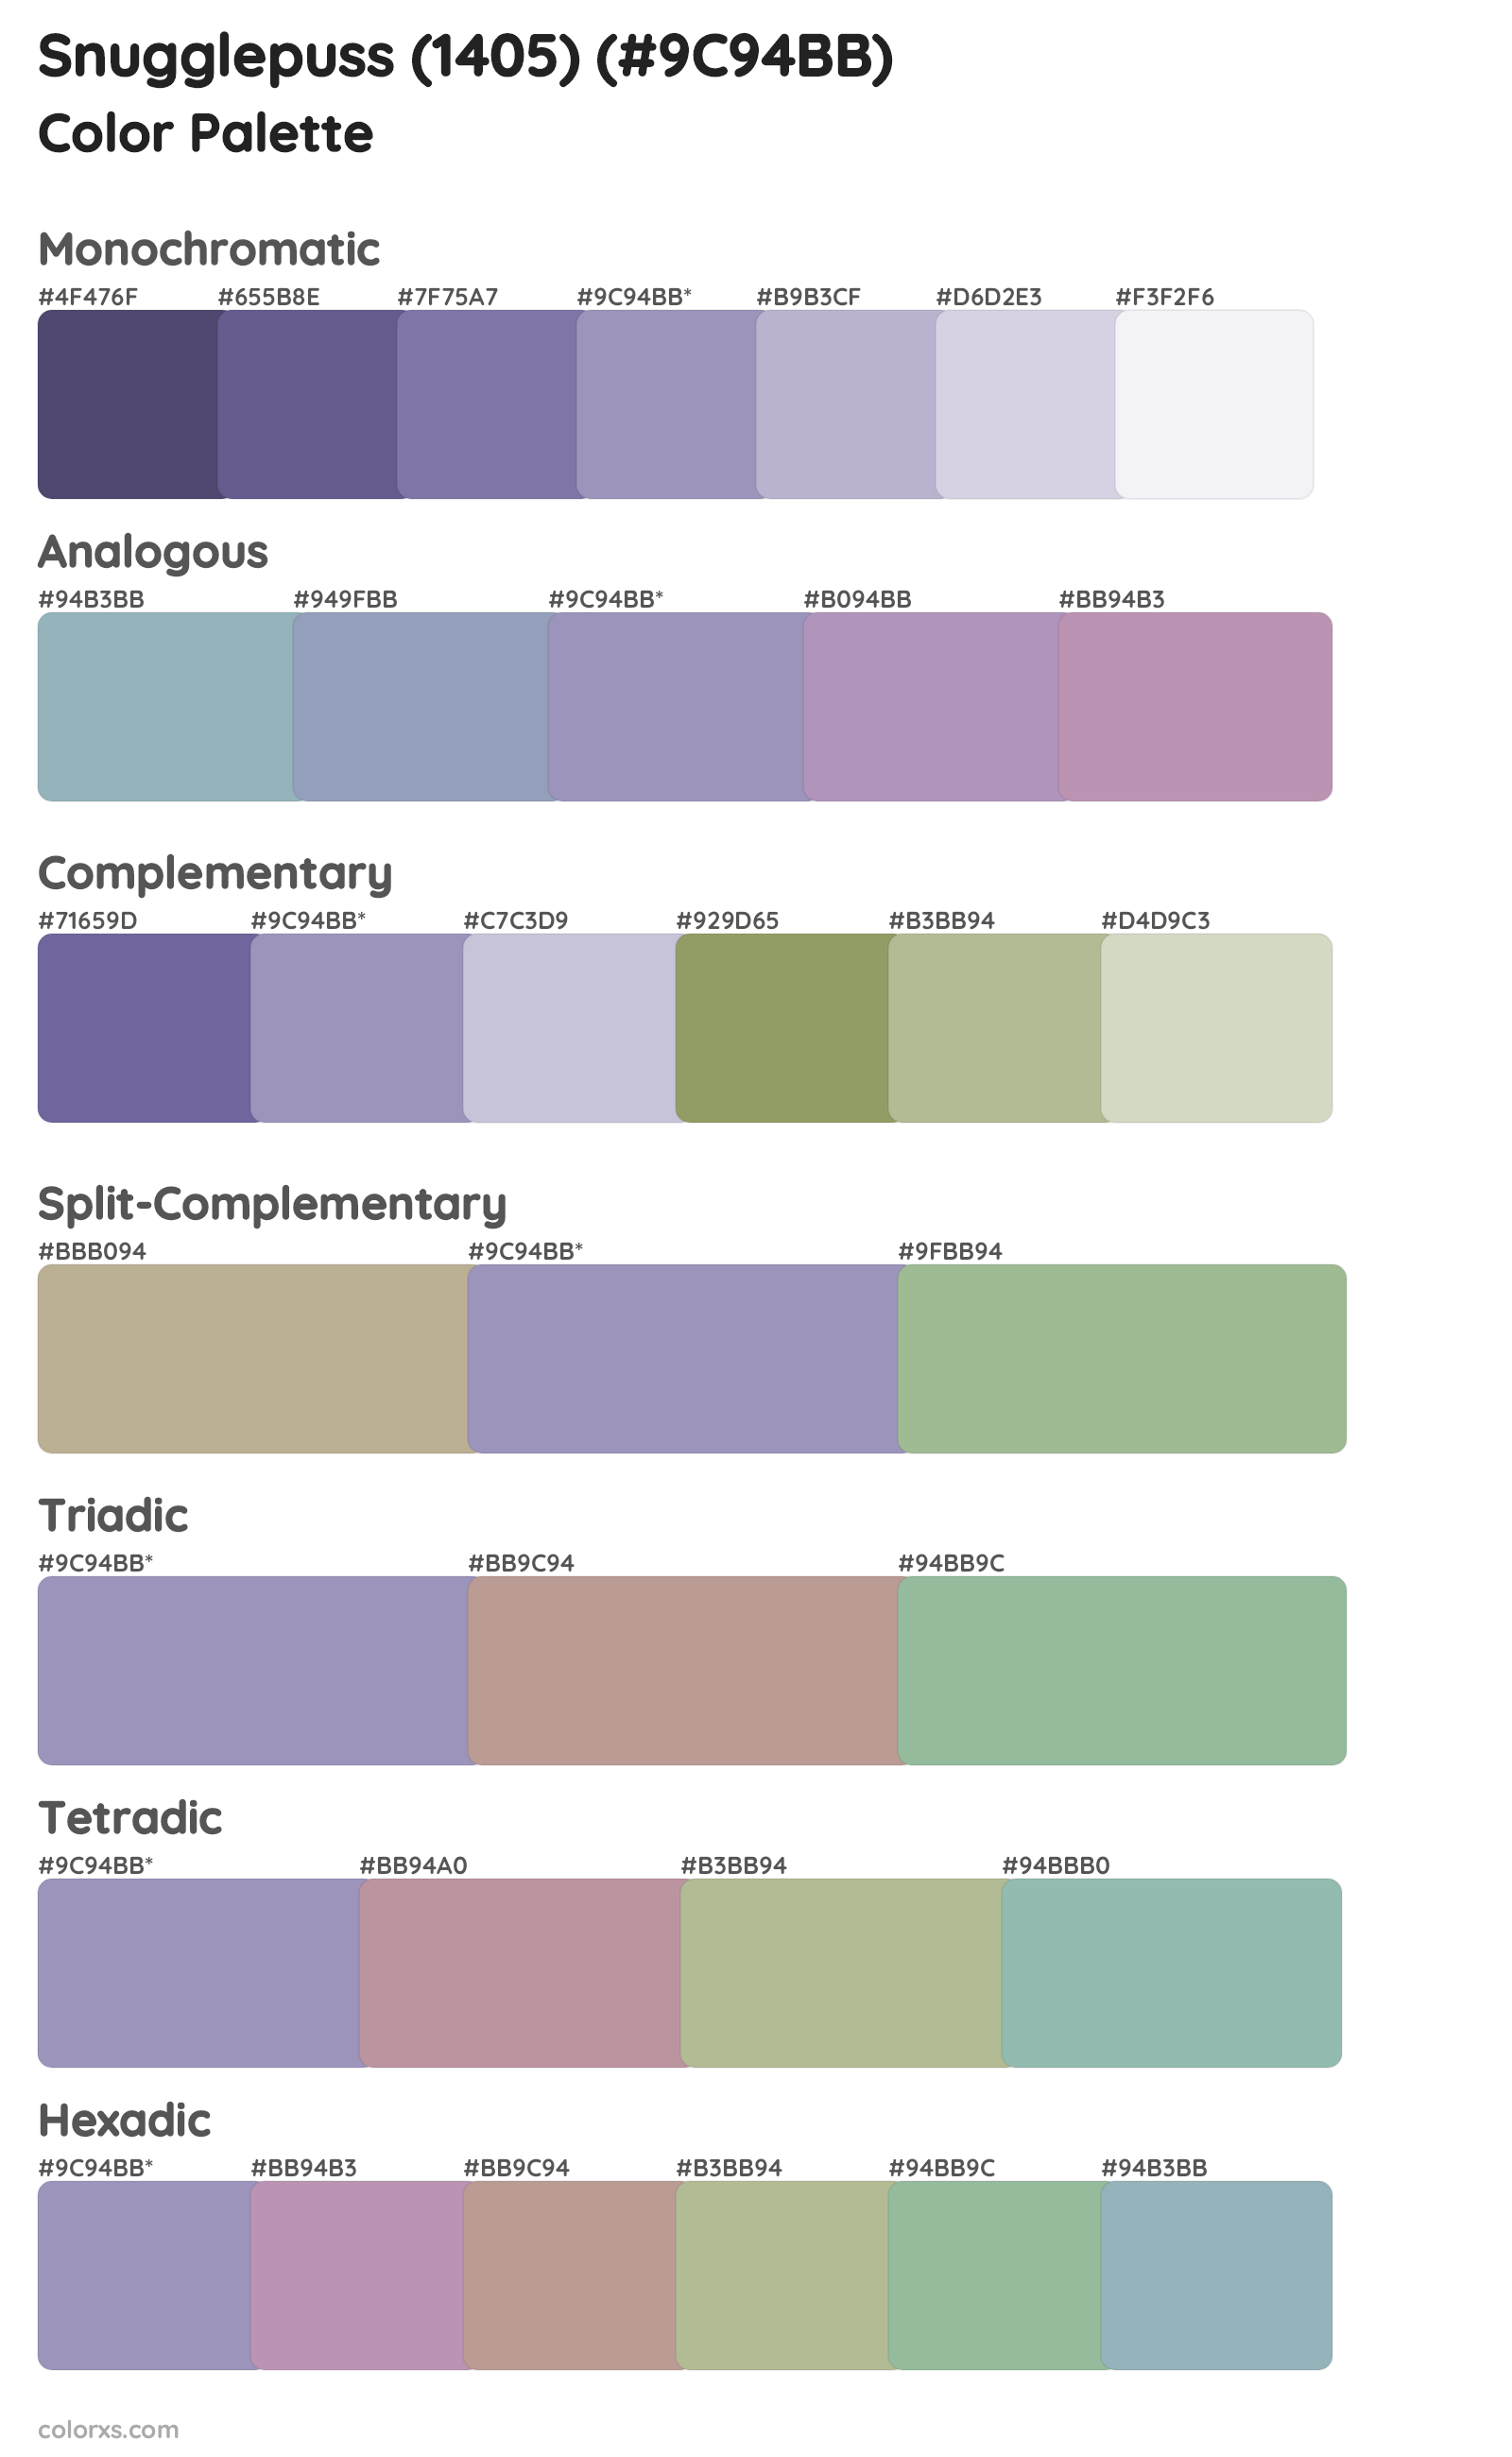 Snugglepuss (1405) Color Scheme Palettes